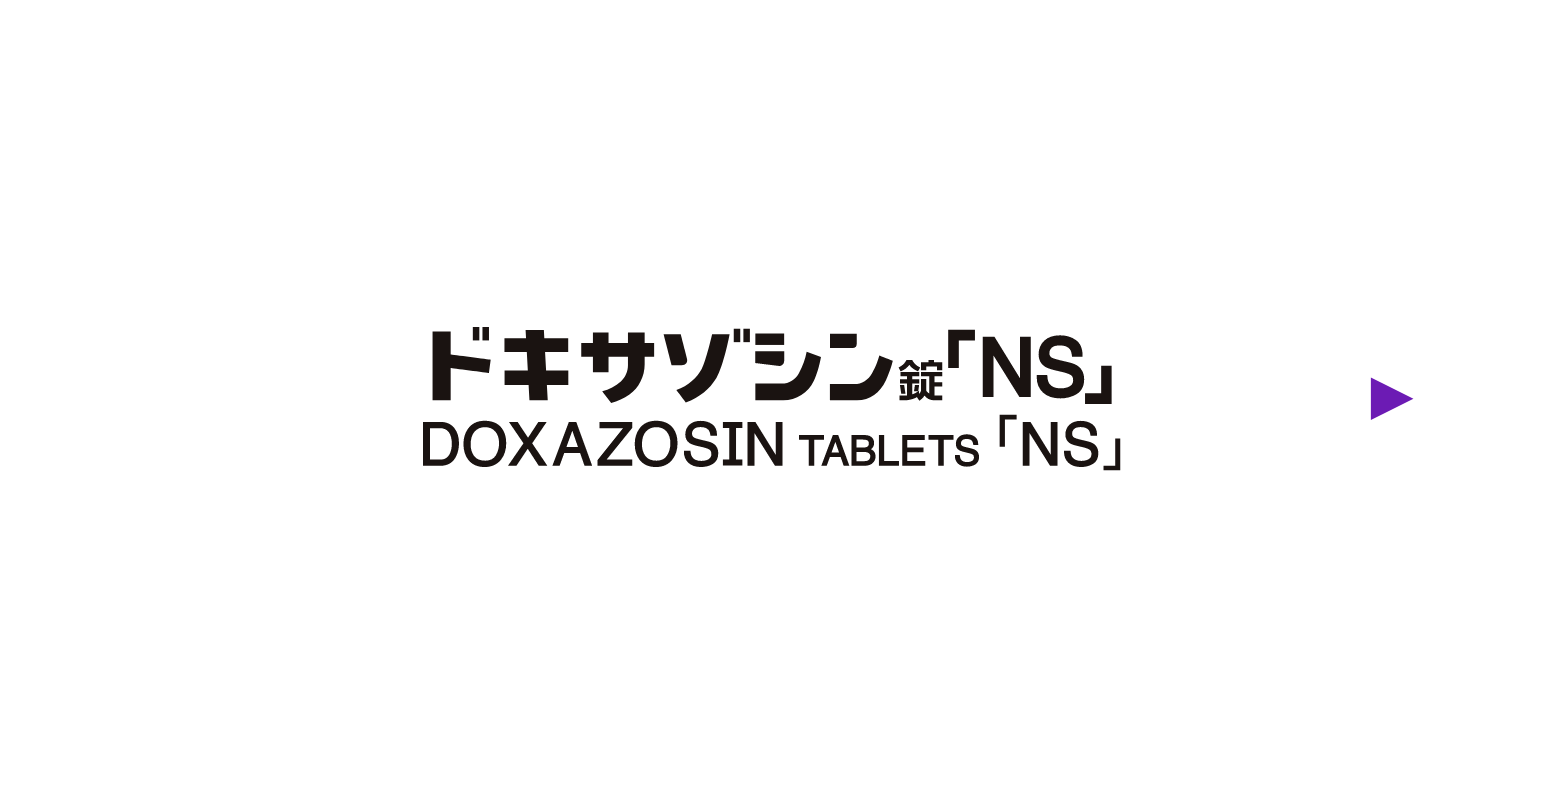 ドキサゾシン錠「NS」